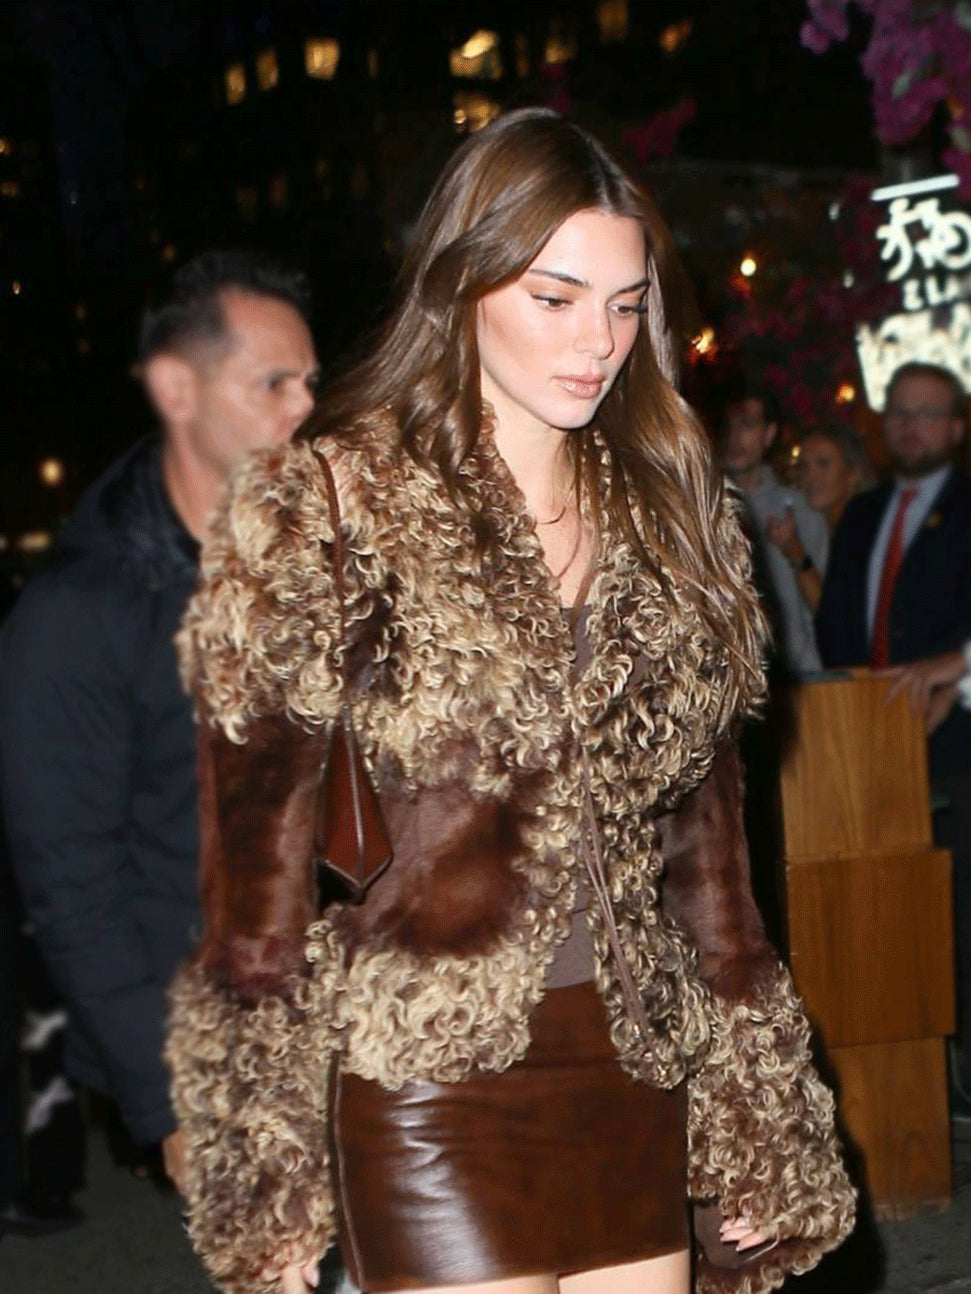 Kendall Jenner Brown Fur Jacket